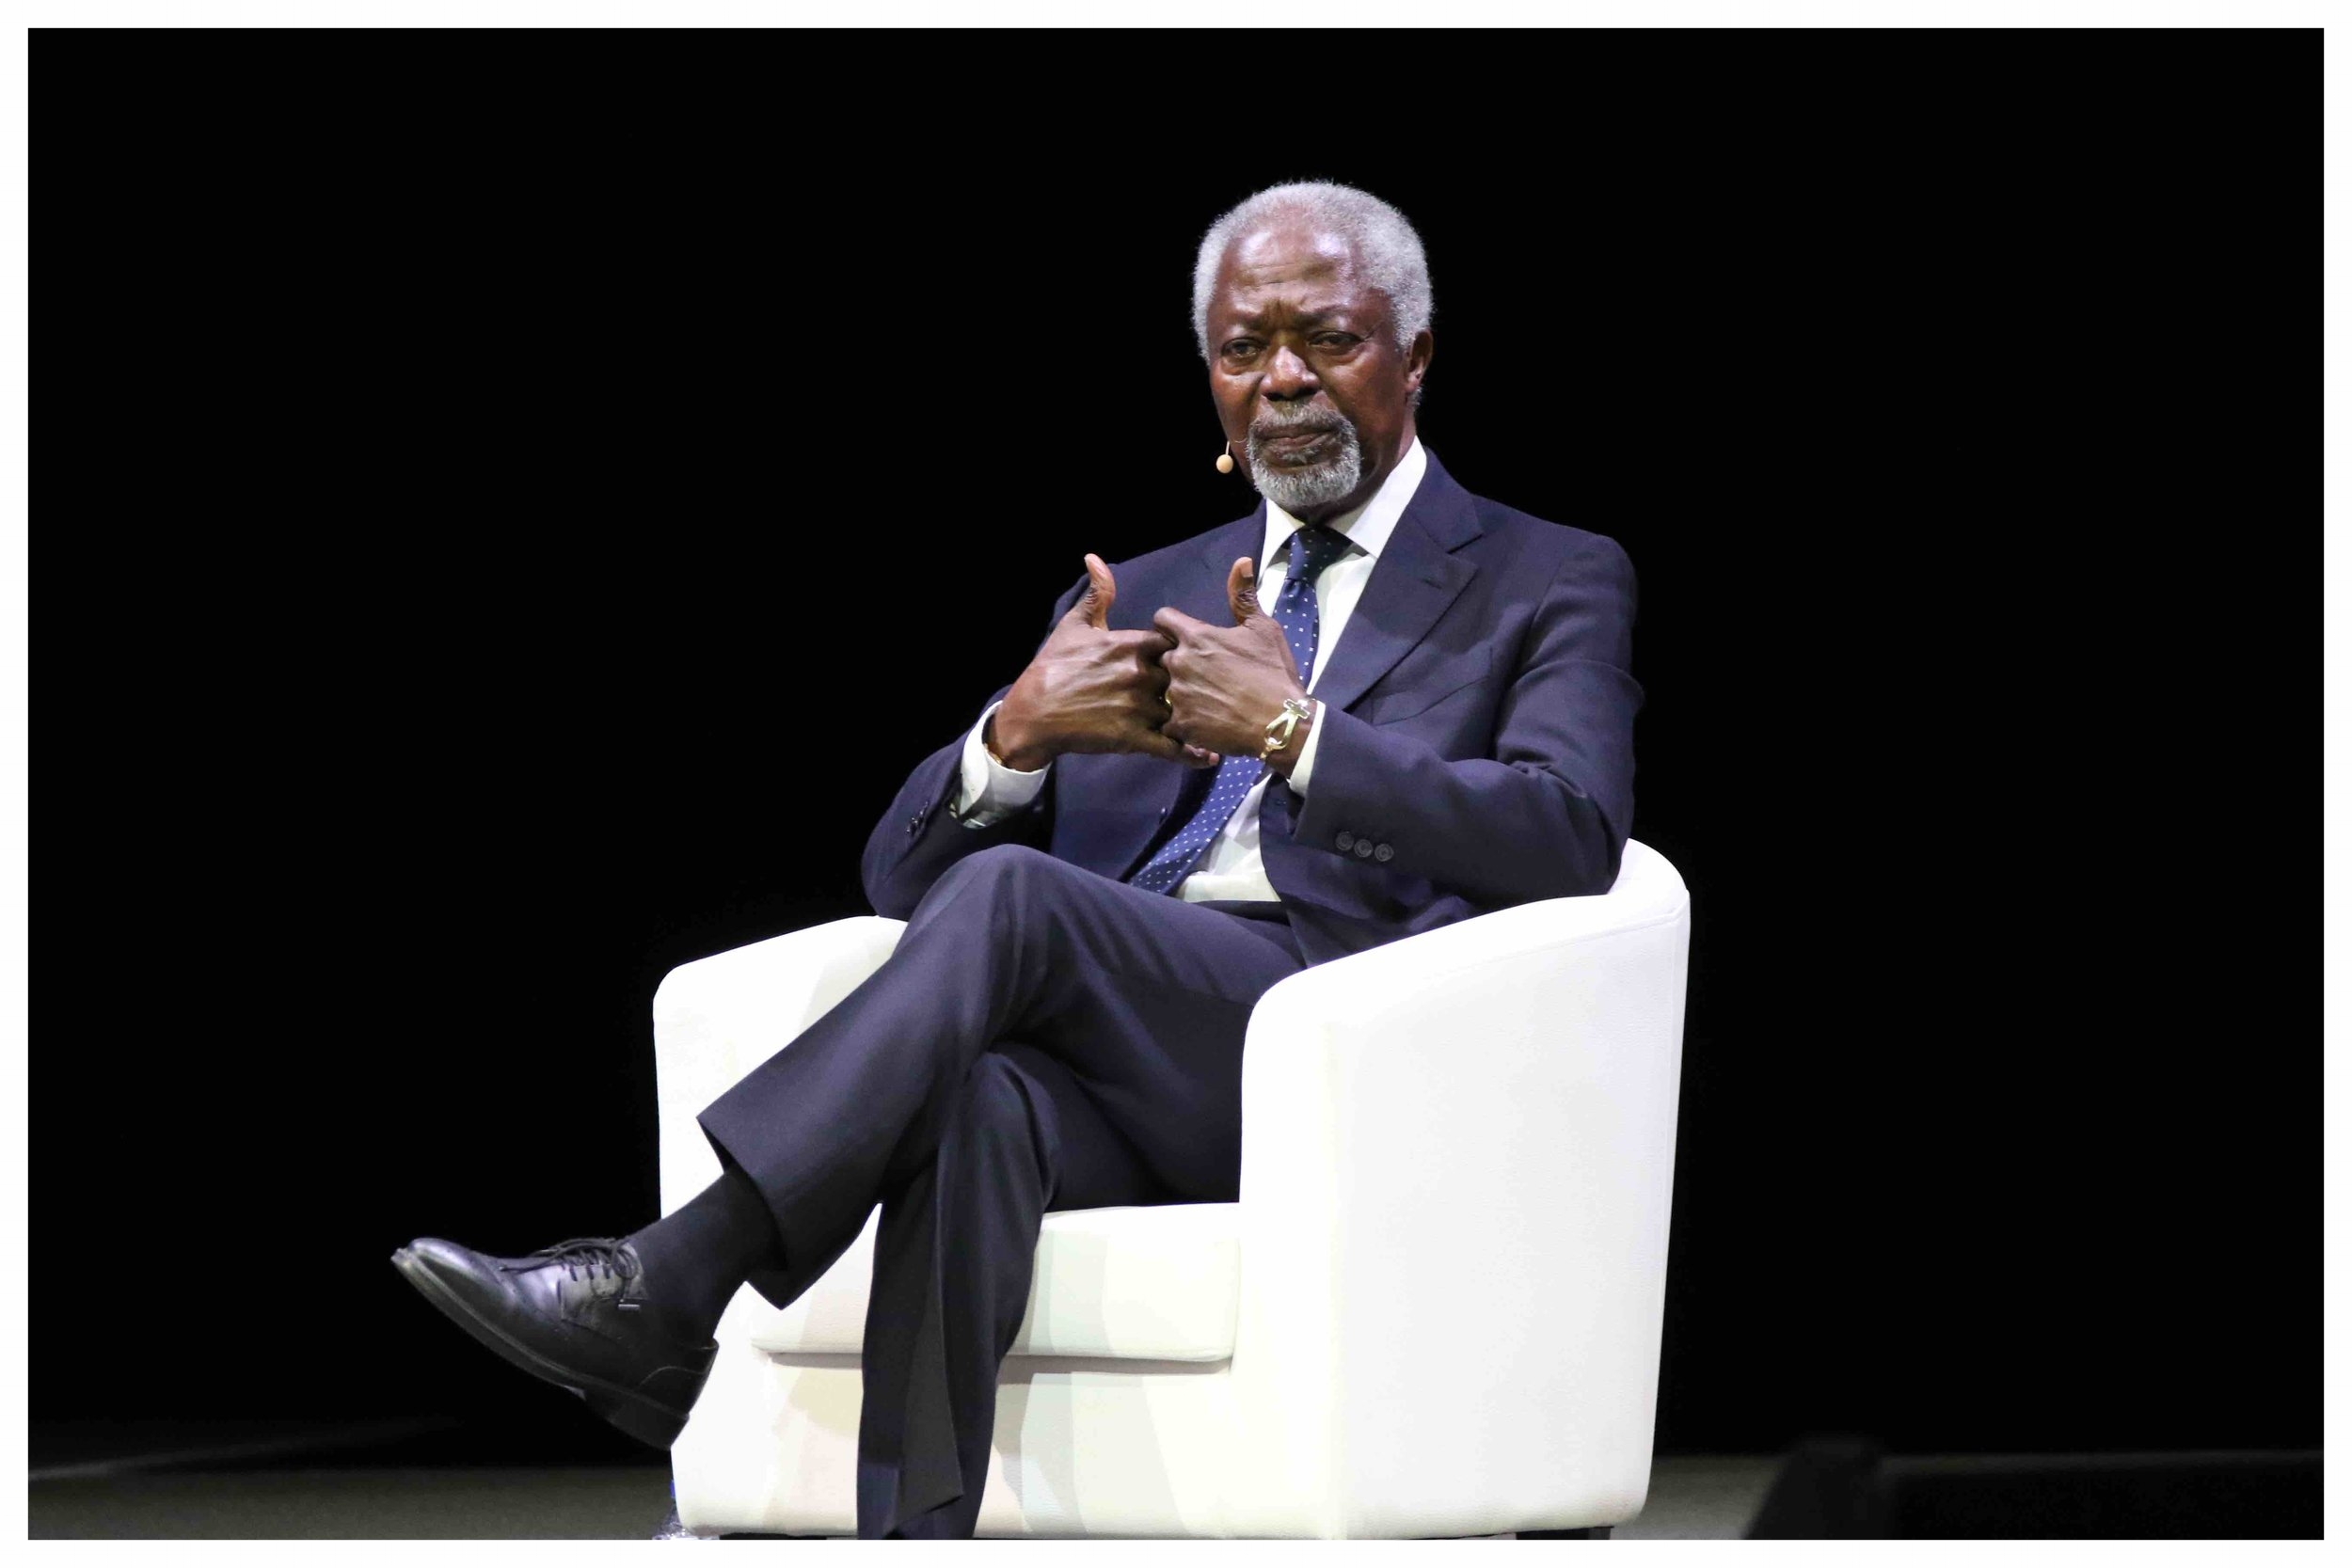 Kofi Annan_close-up_YPO EDGE 2016_lowres.jpg